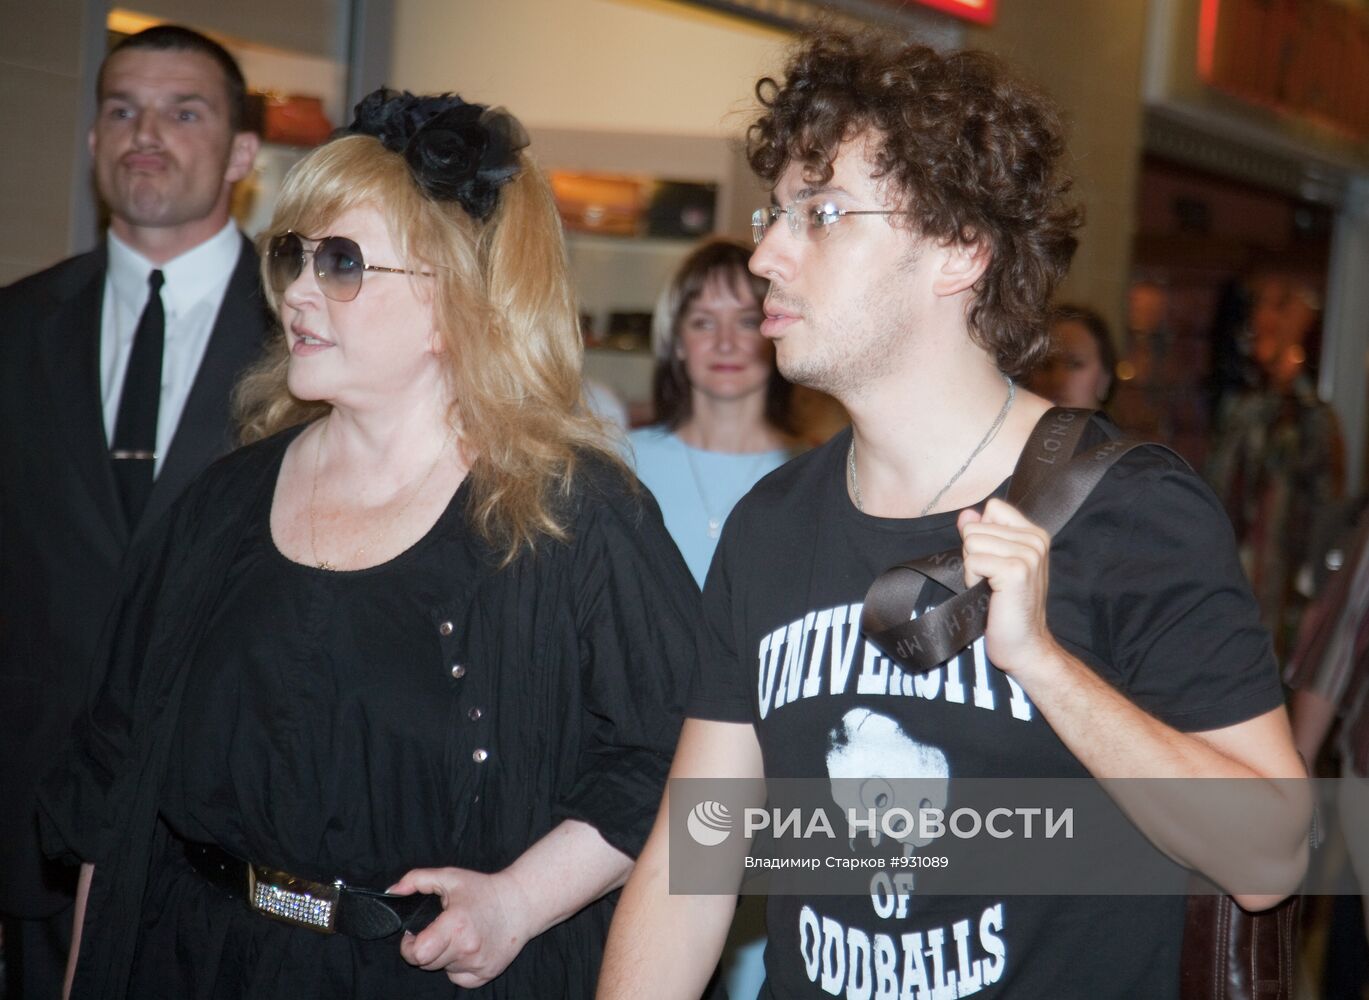 А.Пугачева и М.Галкин прибыли на фестиваль "Юрмалина" в Ригу